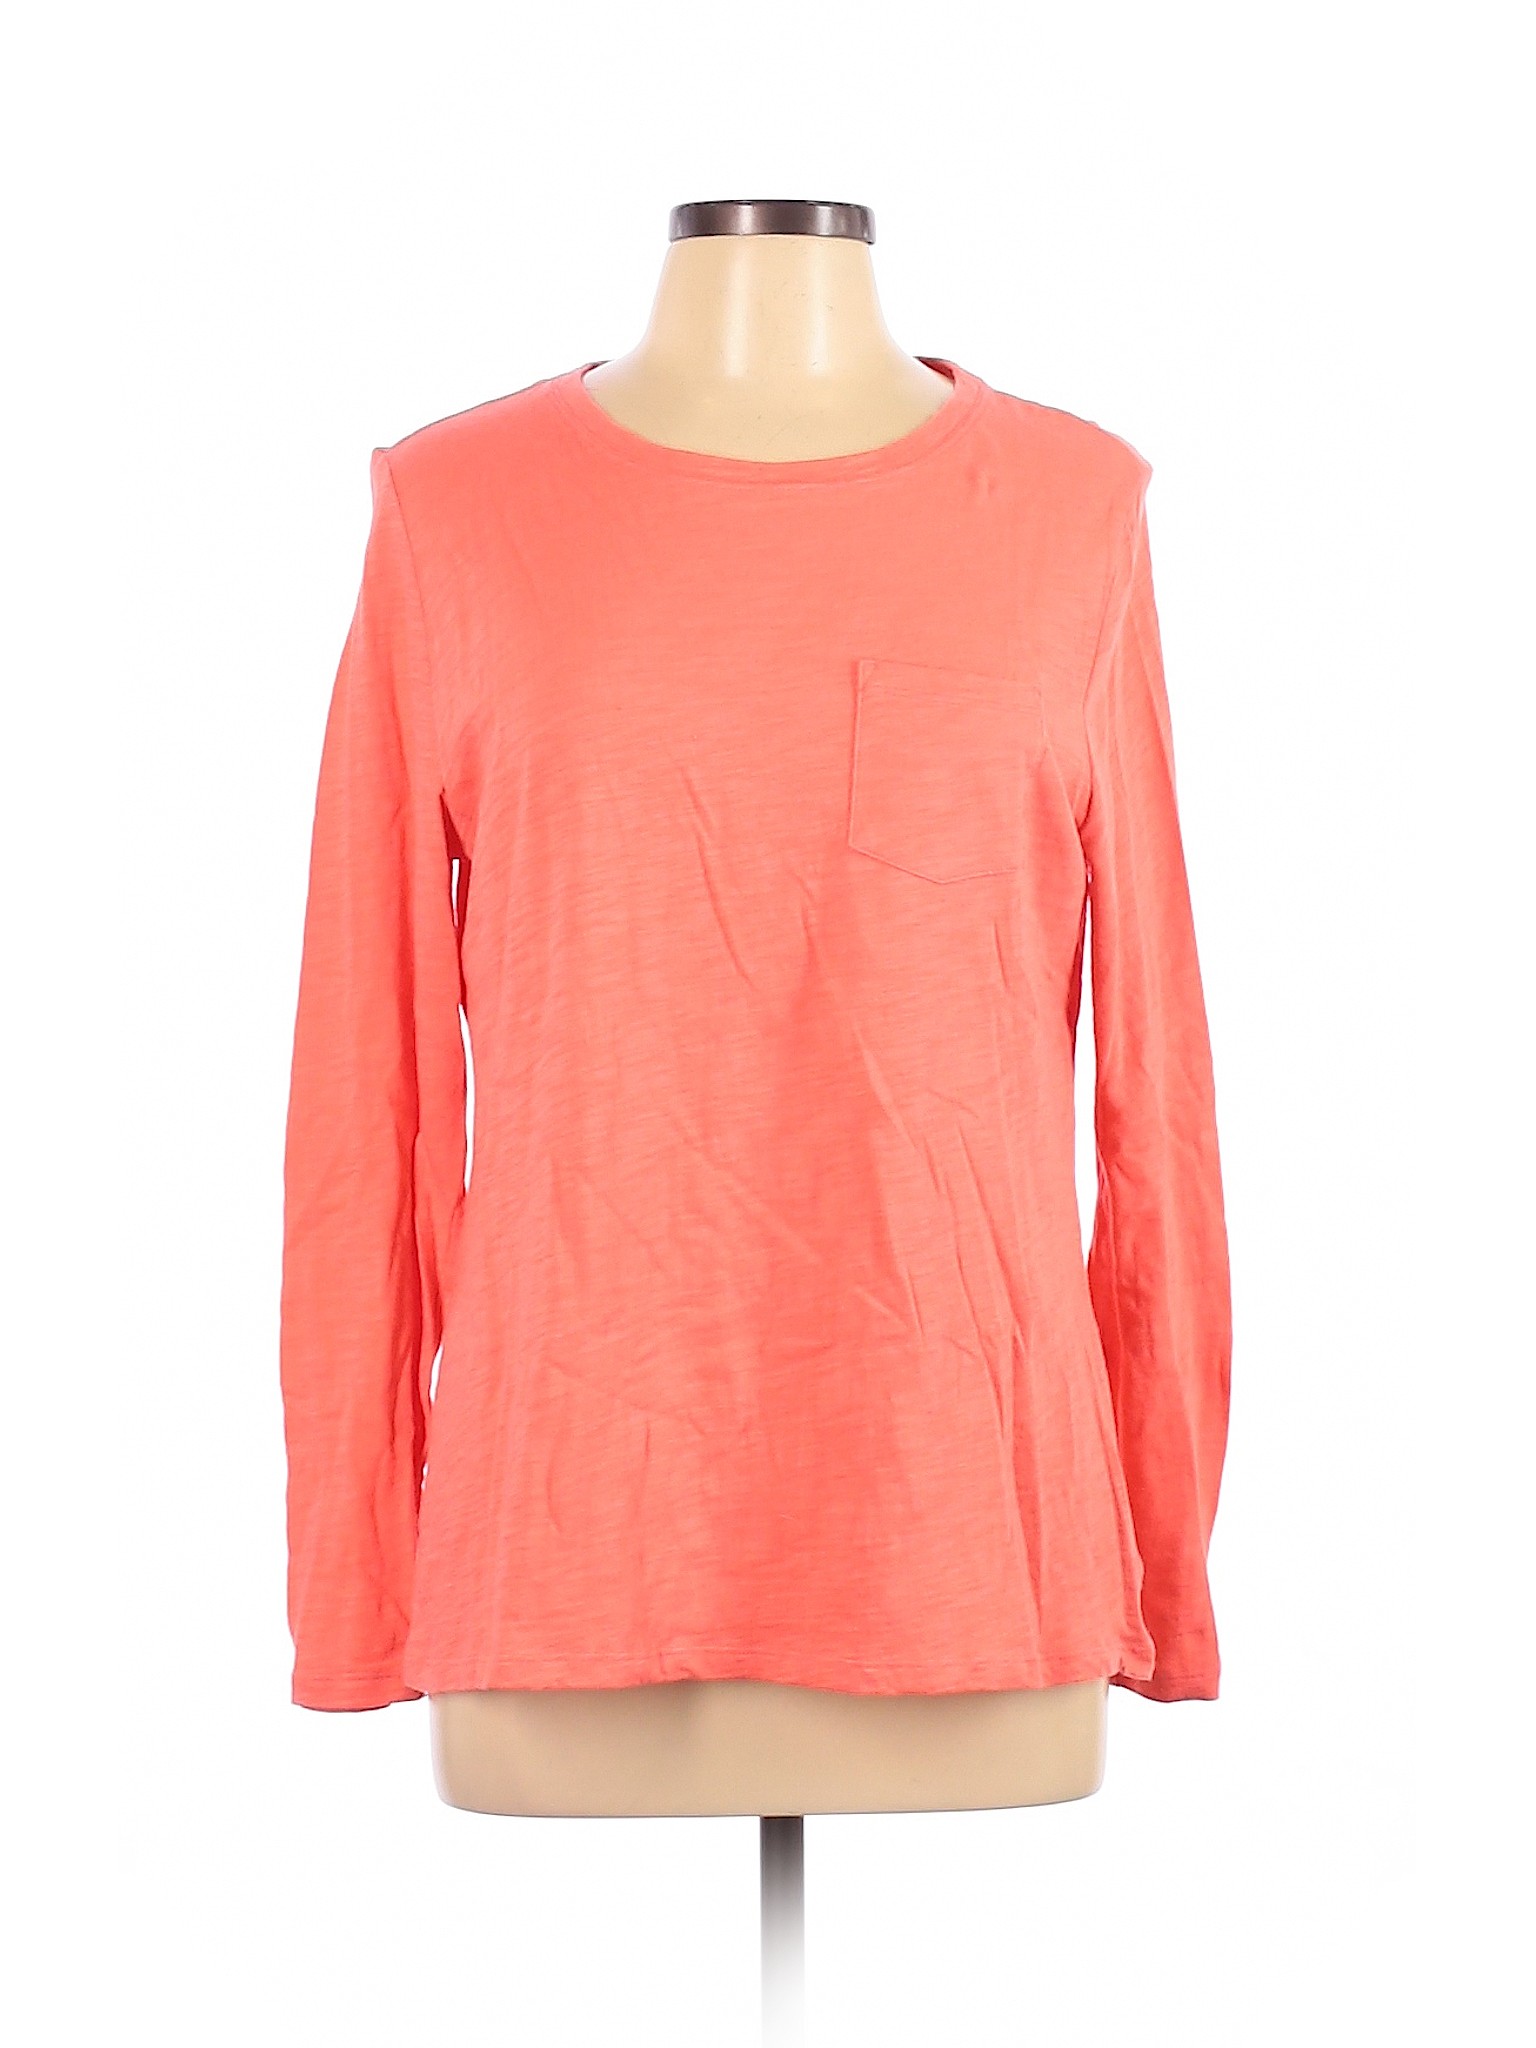 Gap Outlet Women Pink Long Sleeve T-Shirt L | eBay